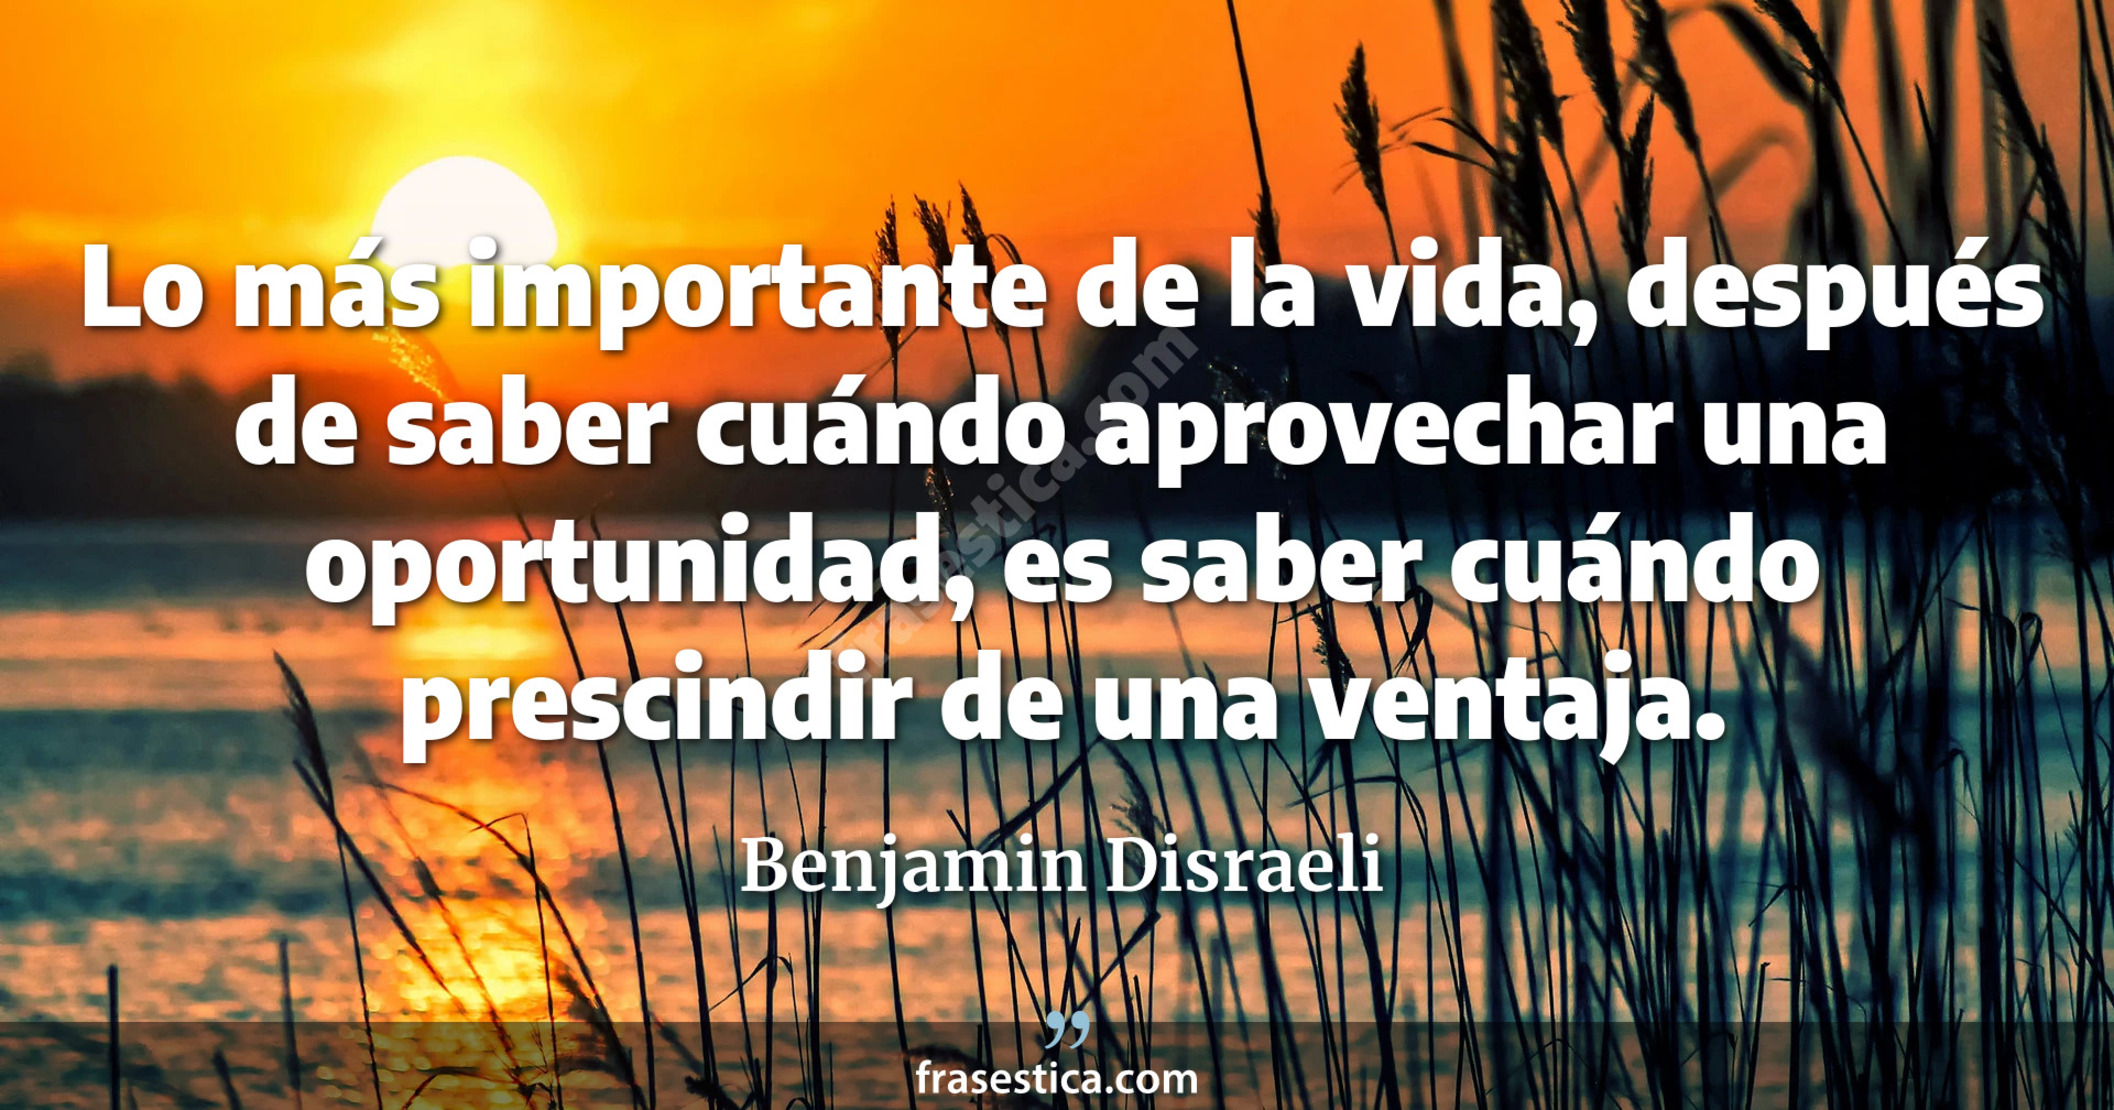 Lo más importante de la vida, después de saber cuándo aprovechar una oportunidad, es saber cuándo prescindir de una ventaja. - Benjamin Disraeli